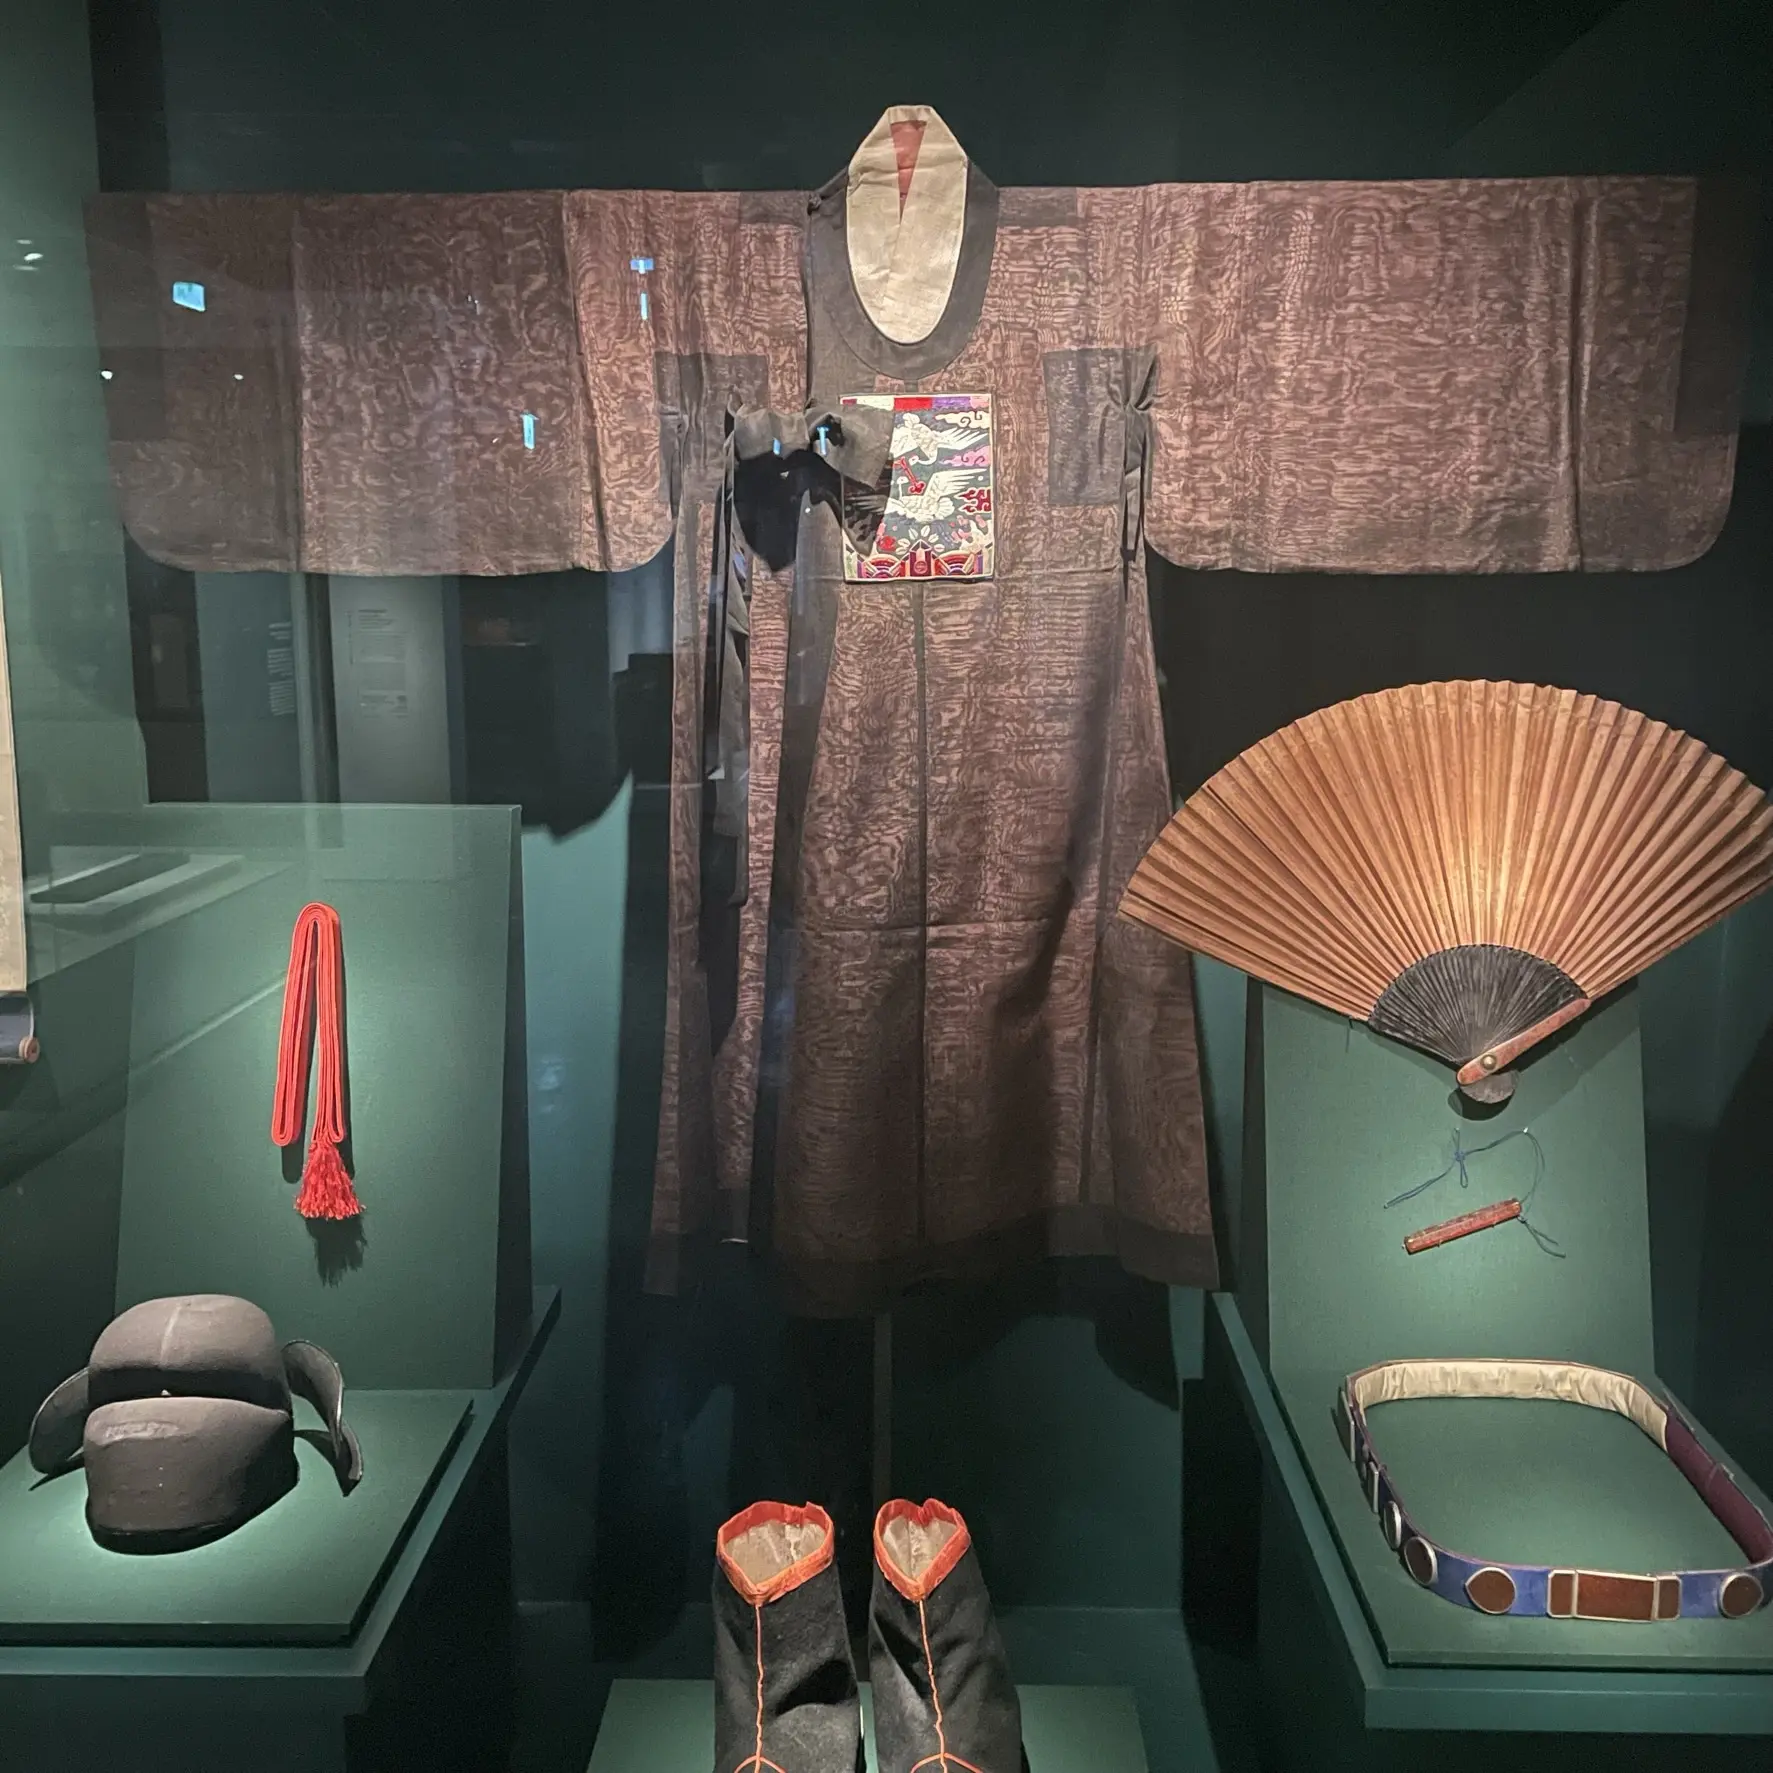 ソウル工芸博物館の展示、男性用の衣装